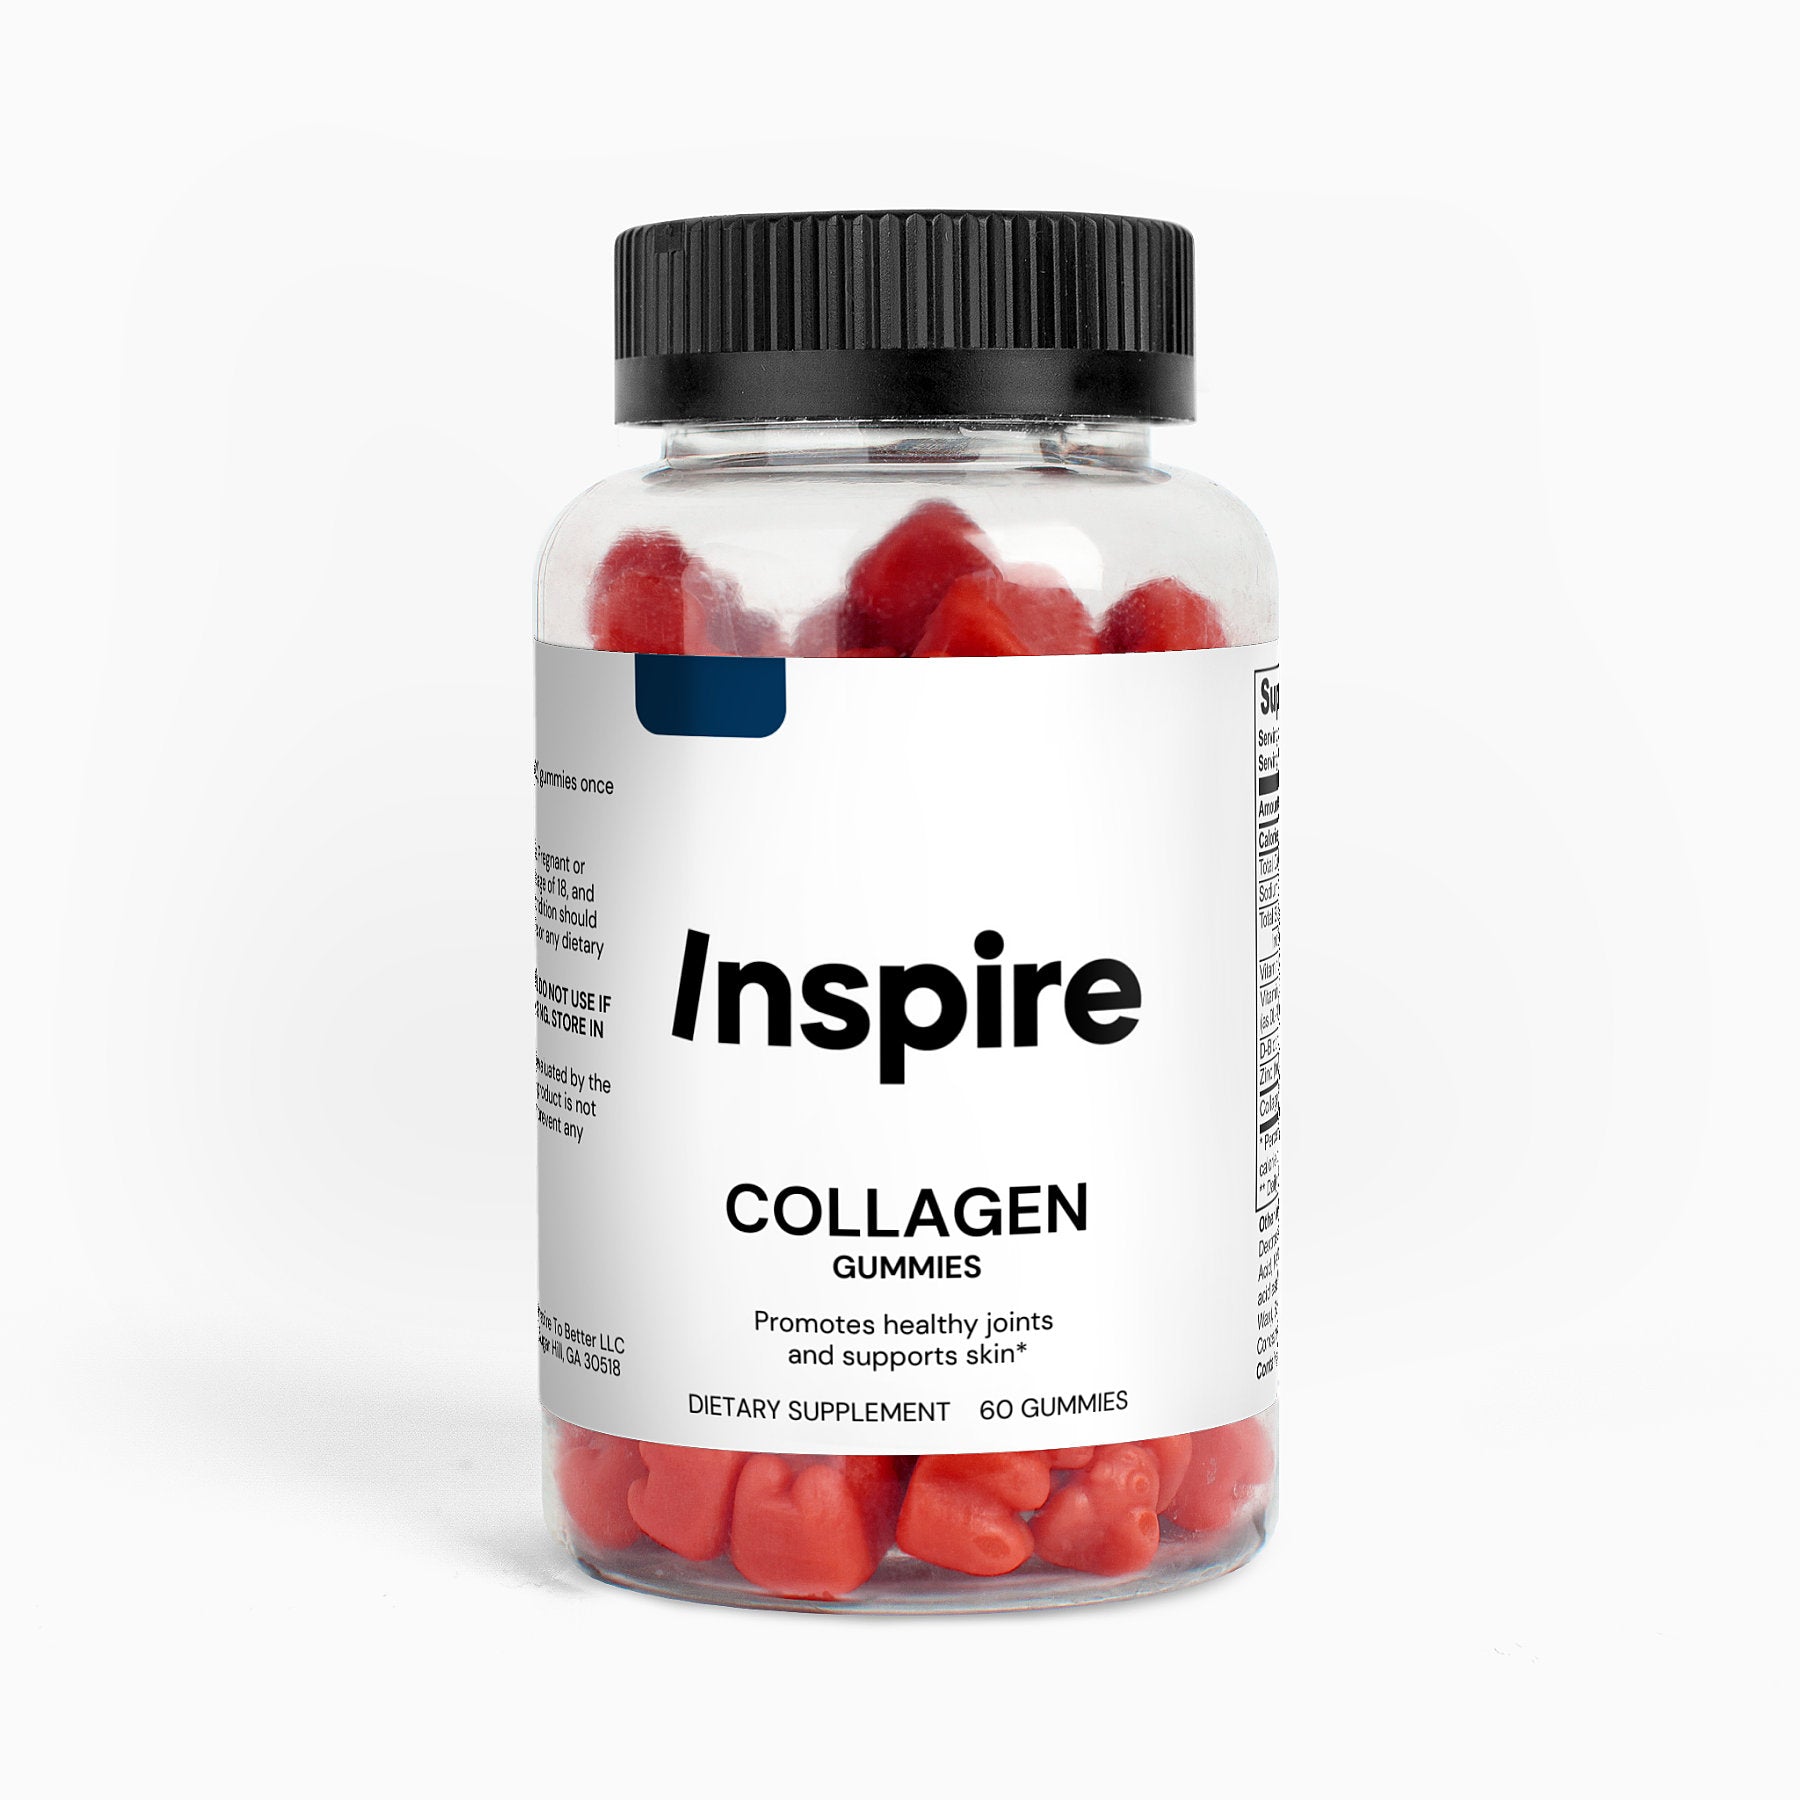 Inspire Collagen Gummy Supplements